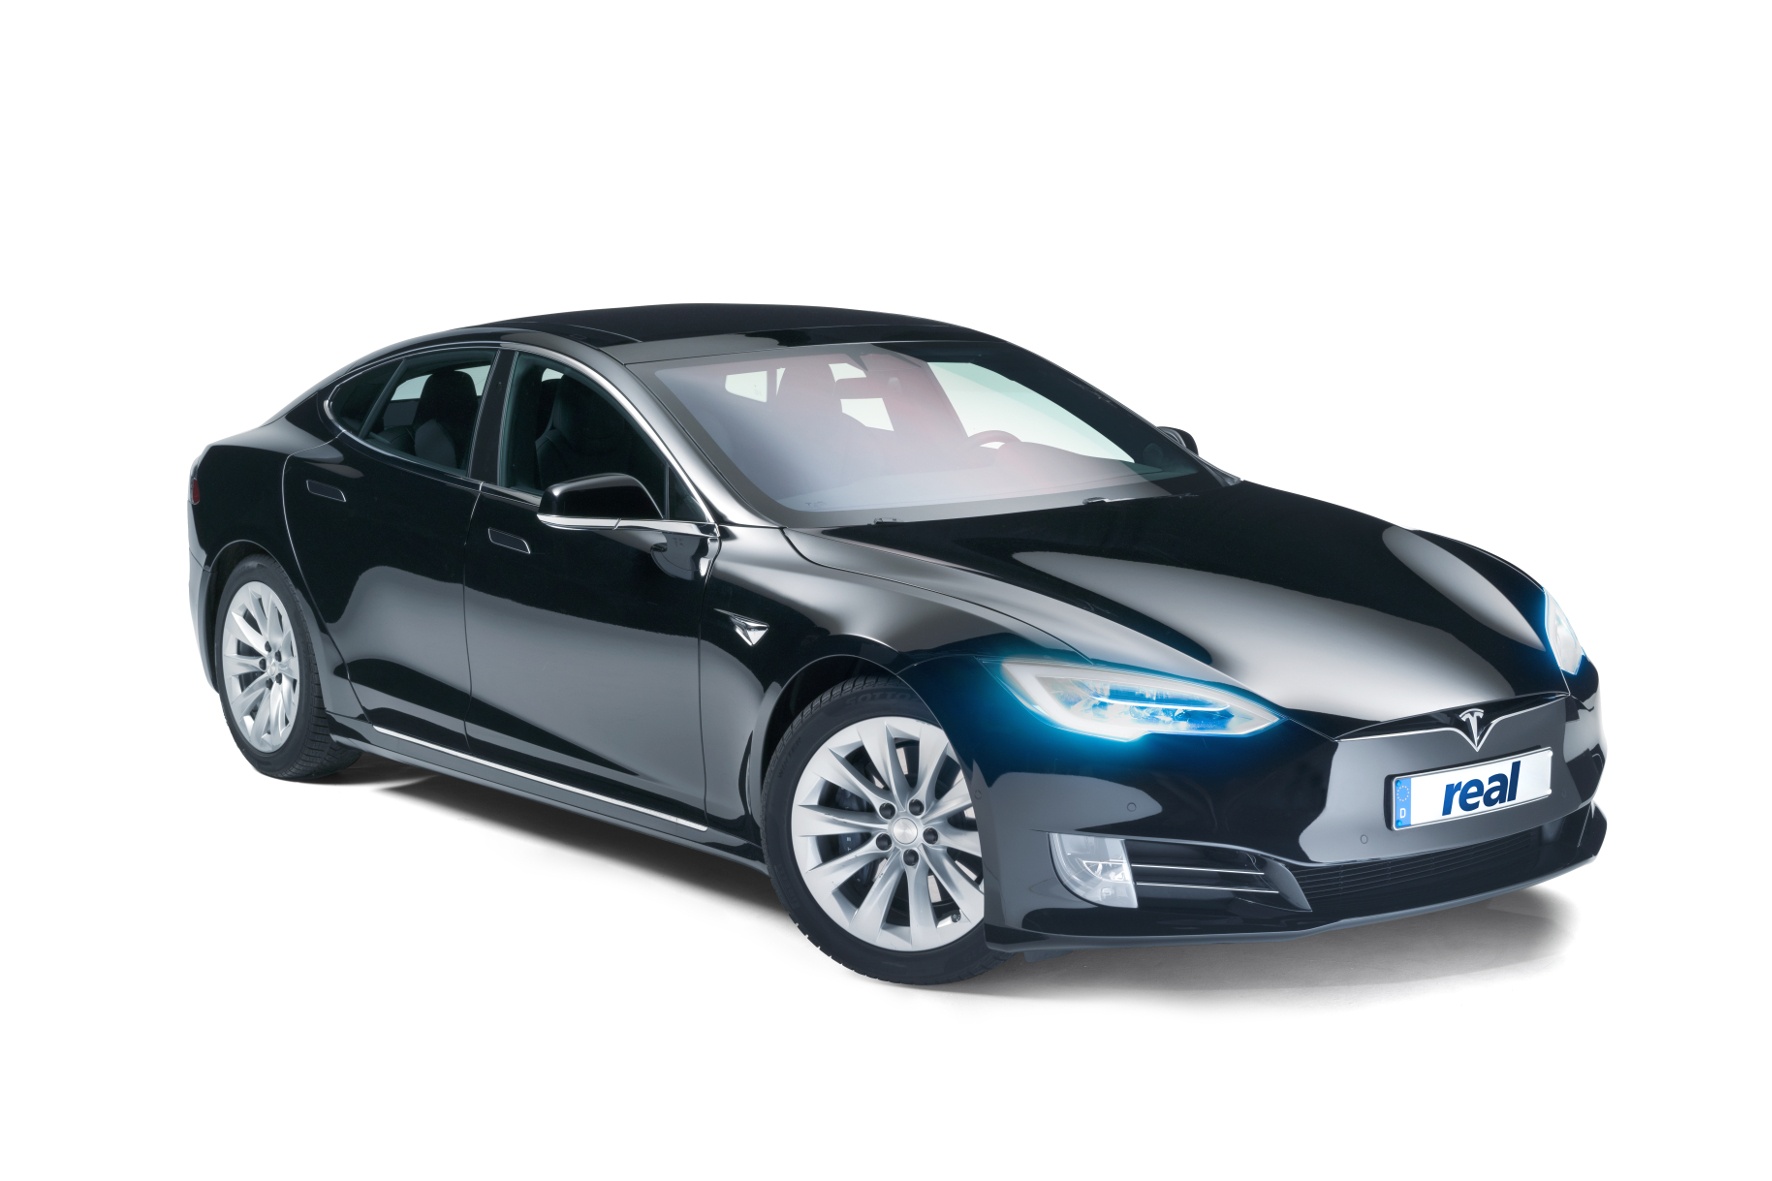 Dieser Tesla Model S war der Hauptpreis einer Gewinnaktion. © real,- SB-Warenhaus GmbH/TRDmobil